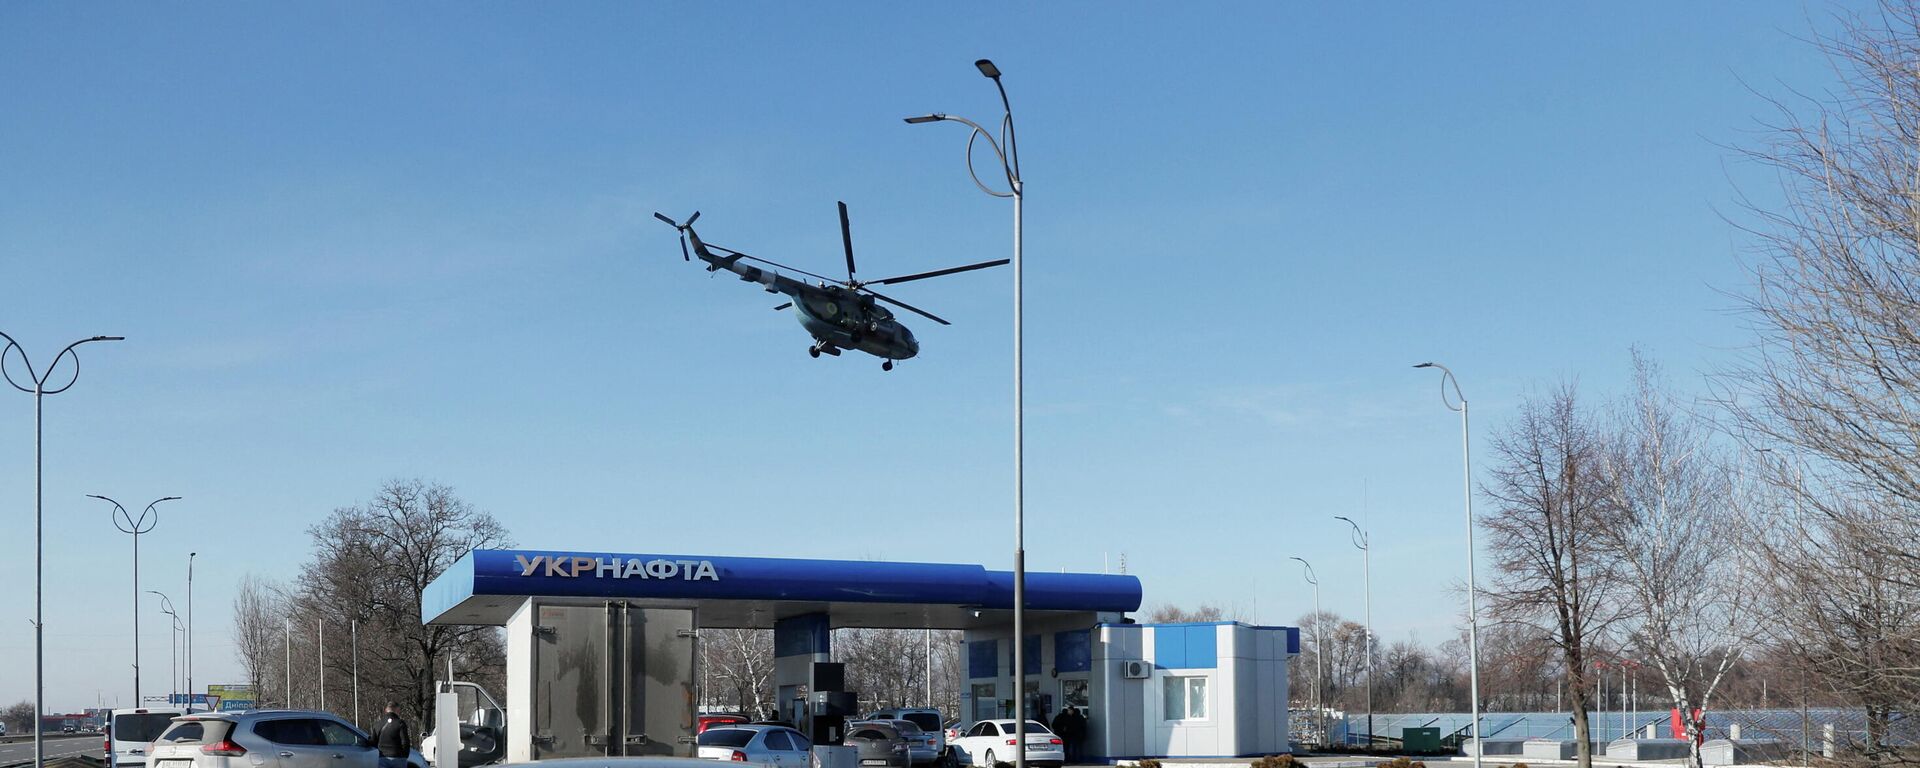 Украинский военный вертолет пролетает над автозаправочной станцией близ Днепропетровска - Sputnik Казахстан, 1920, 25.02.2022